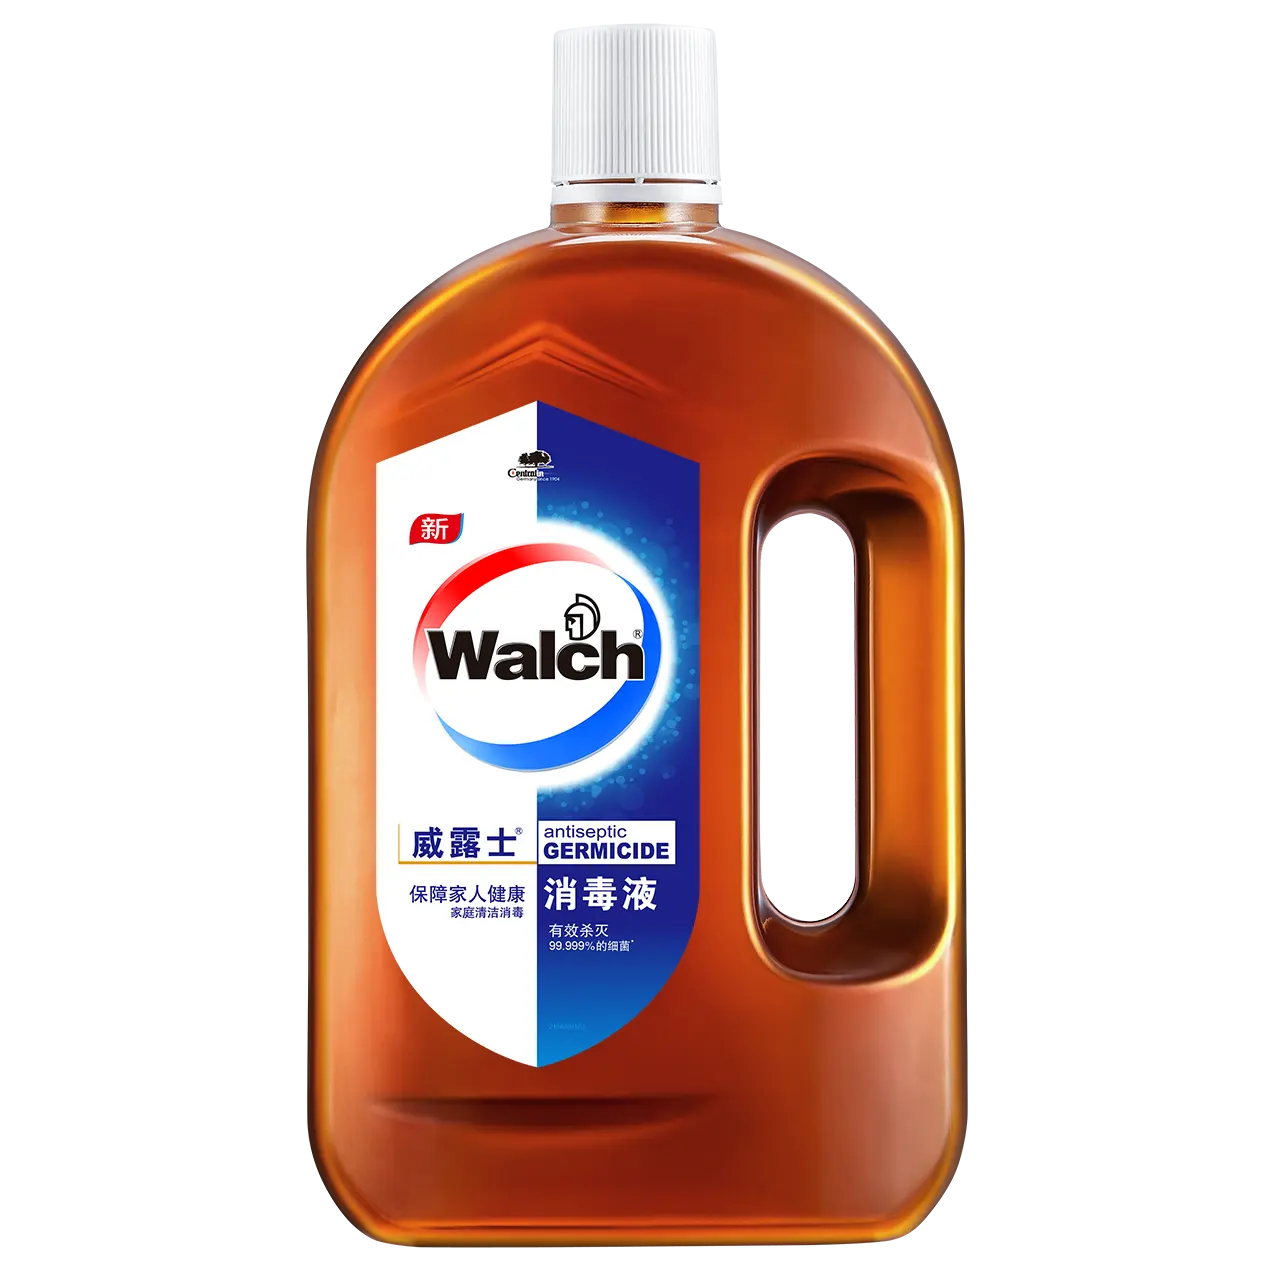 Walch classe a desinfetante desinfetante líquido antisséptico